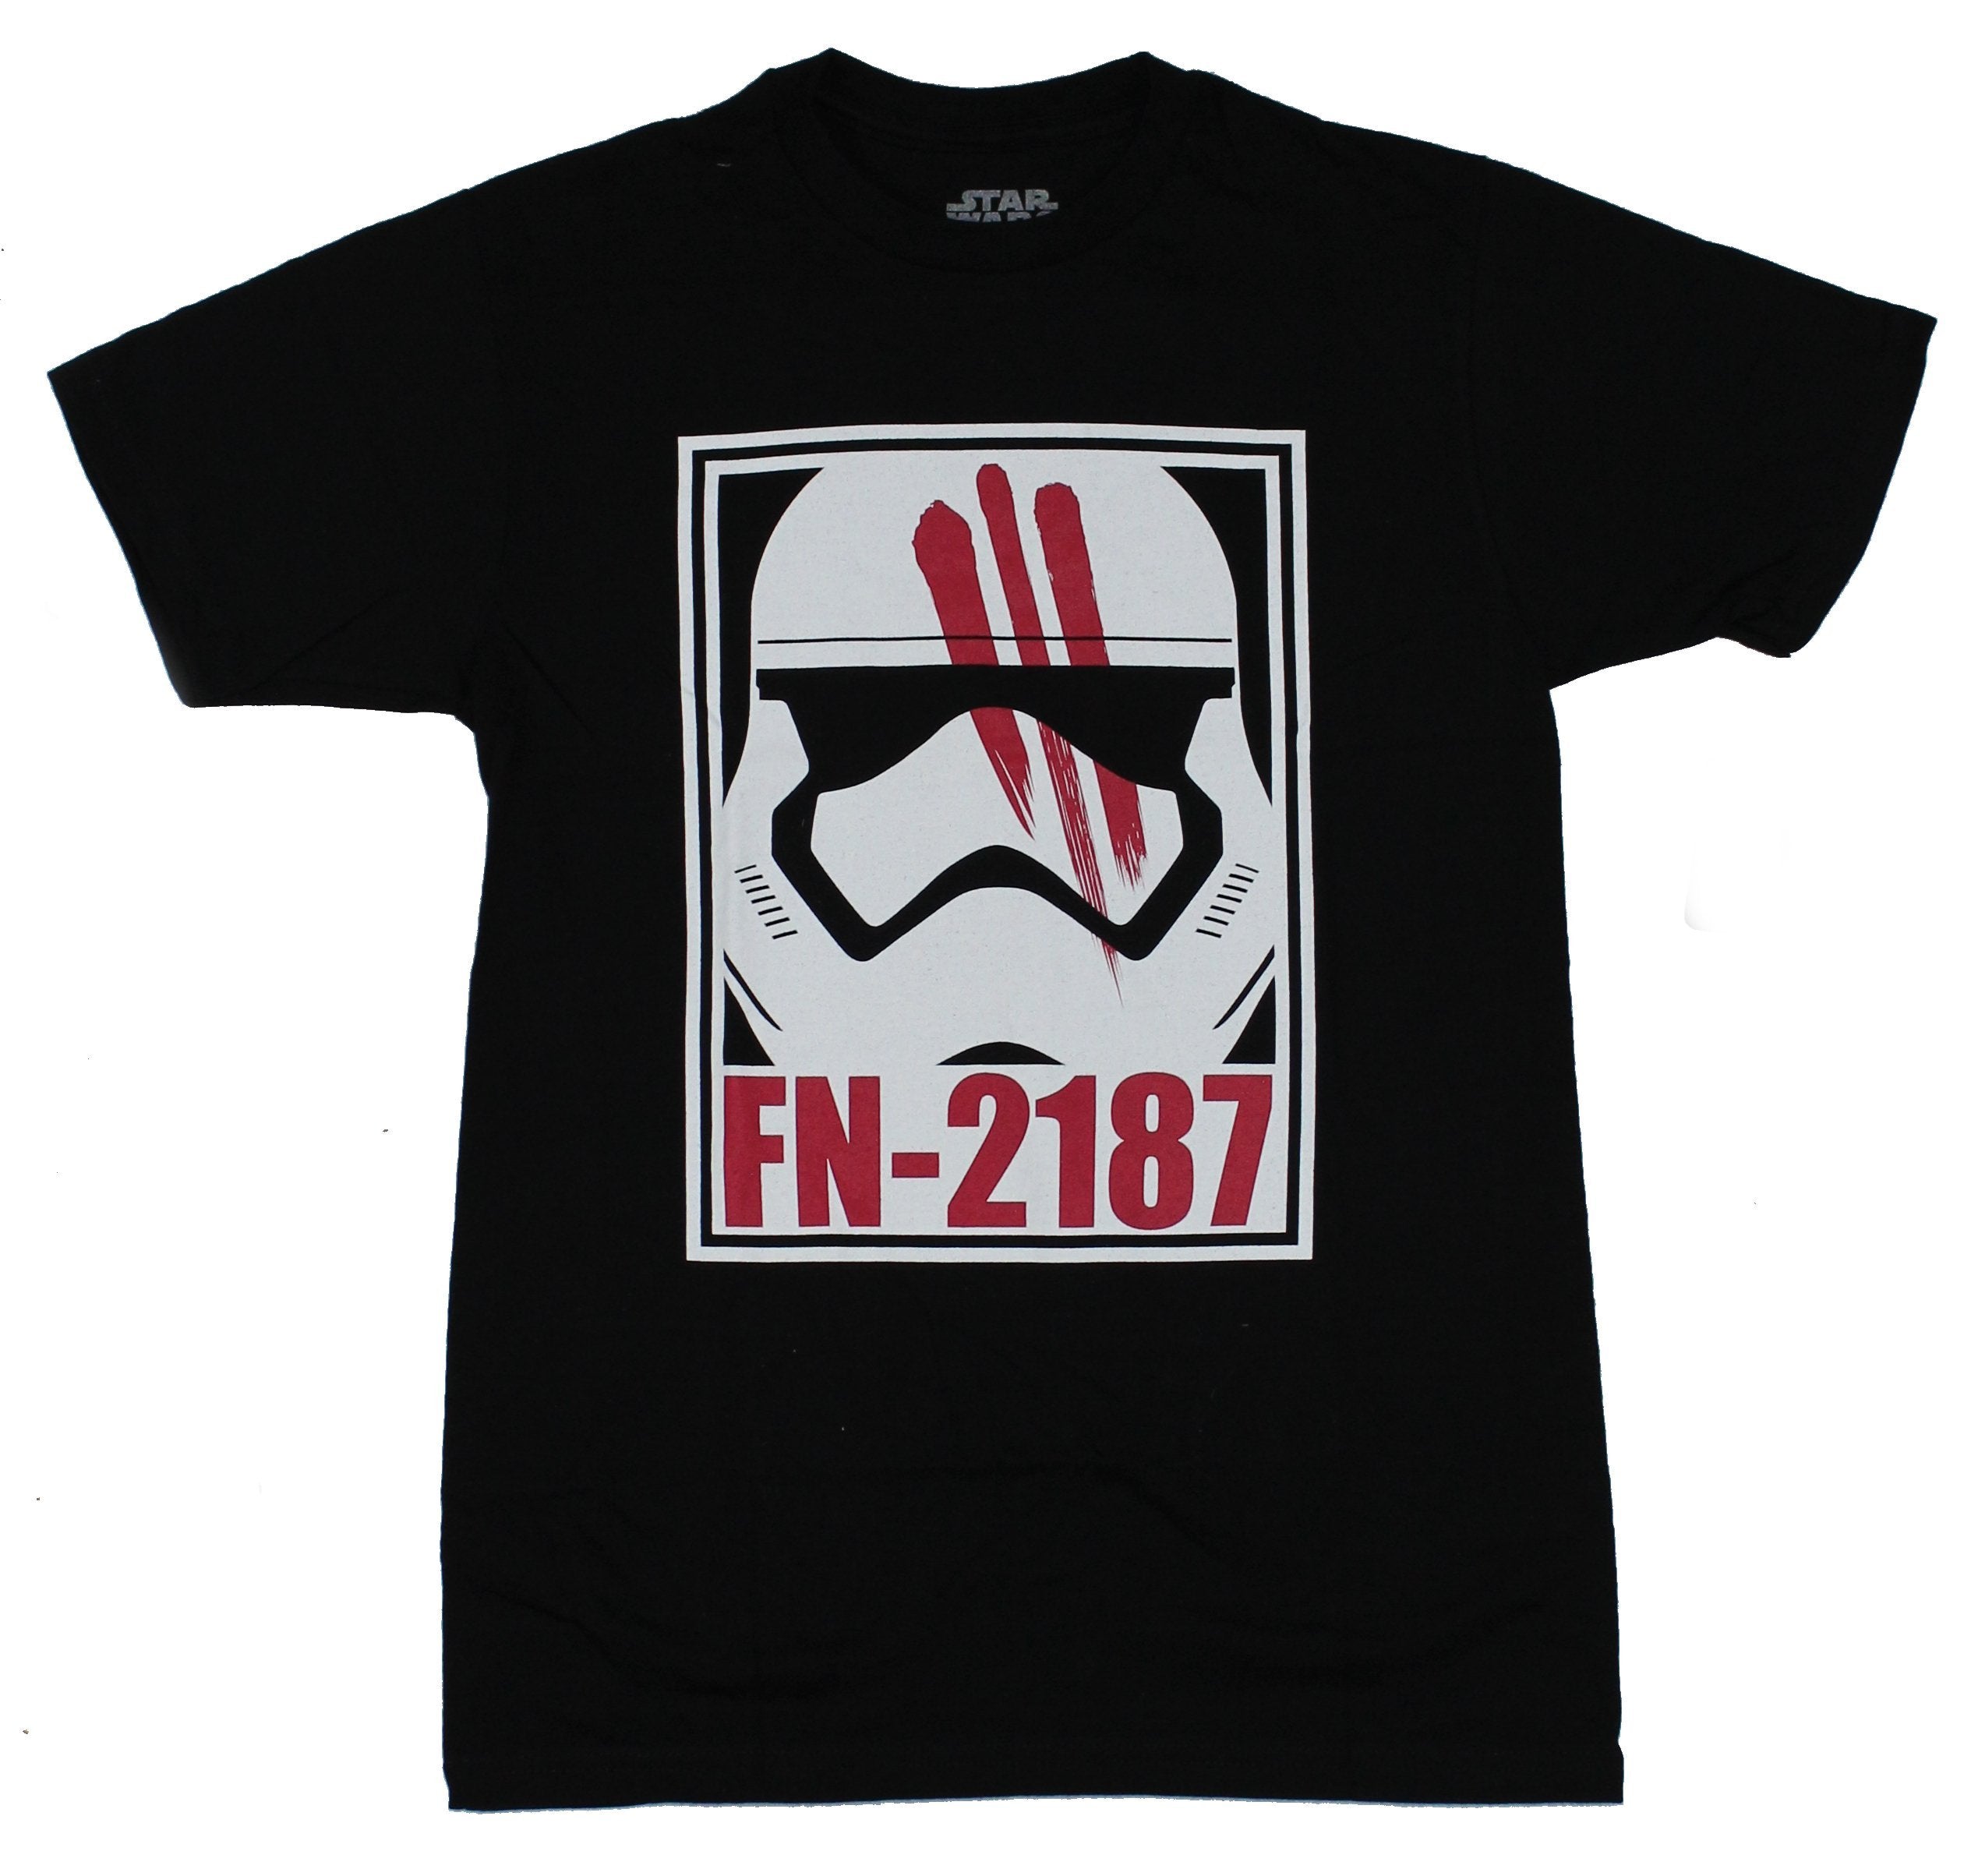 Star Wars Force Awakens Mens T-Shirt - Fn-2187 Finn Blood Streaked Mask Image